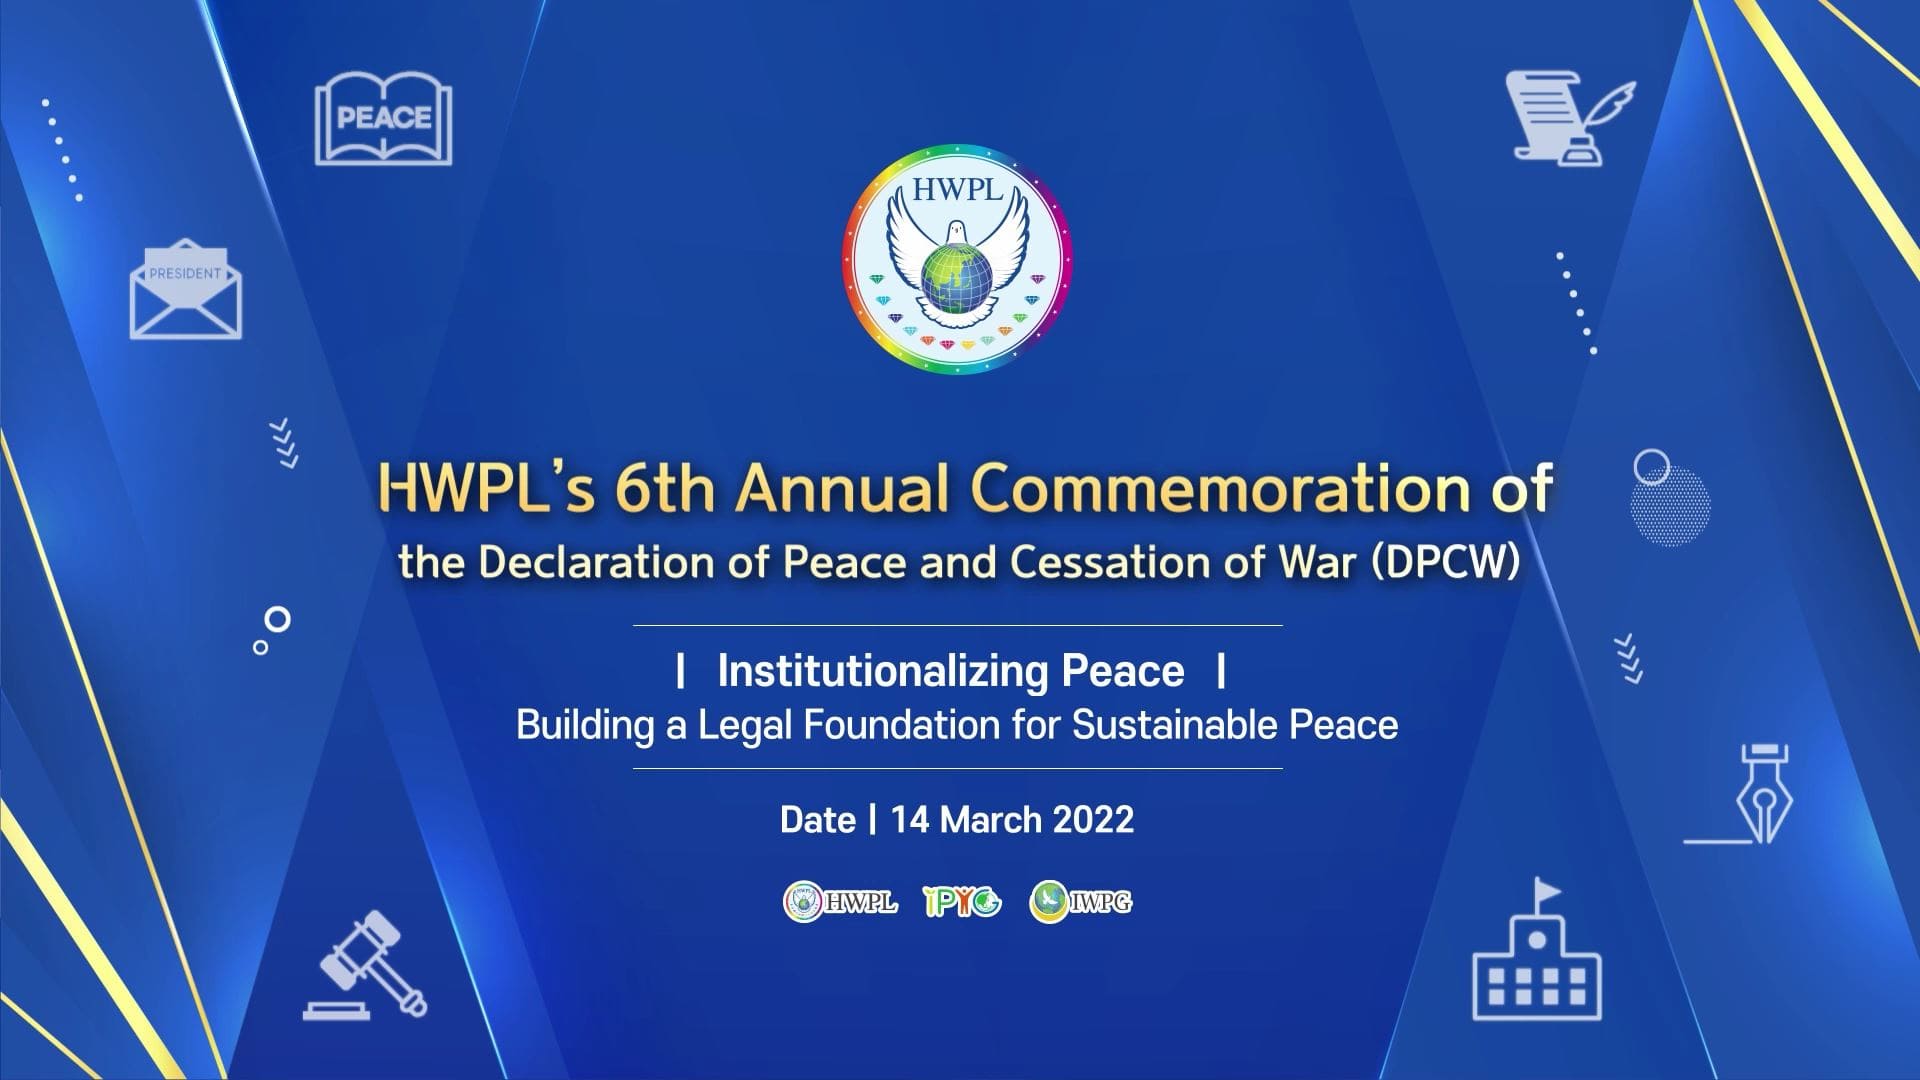 6. jährliche HWPL-Jubiläumsveranstaltung zur Declaration of Peace and Cessation of War (DPCW)